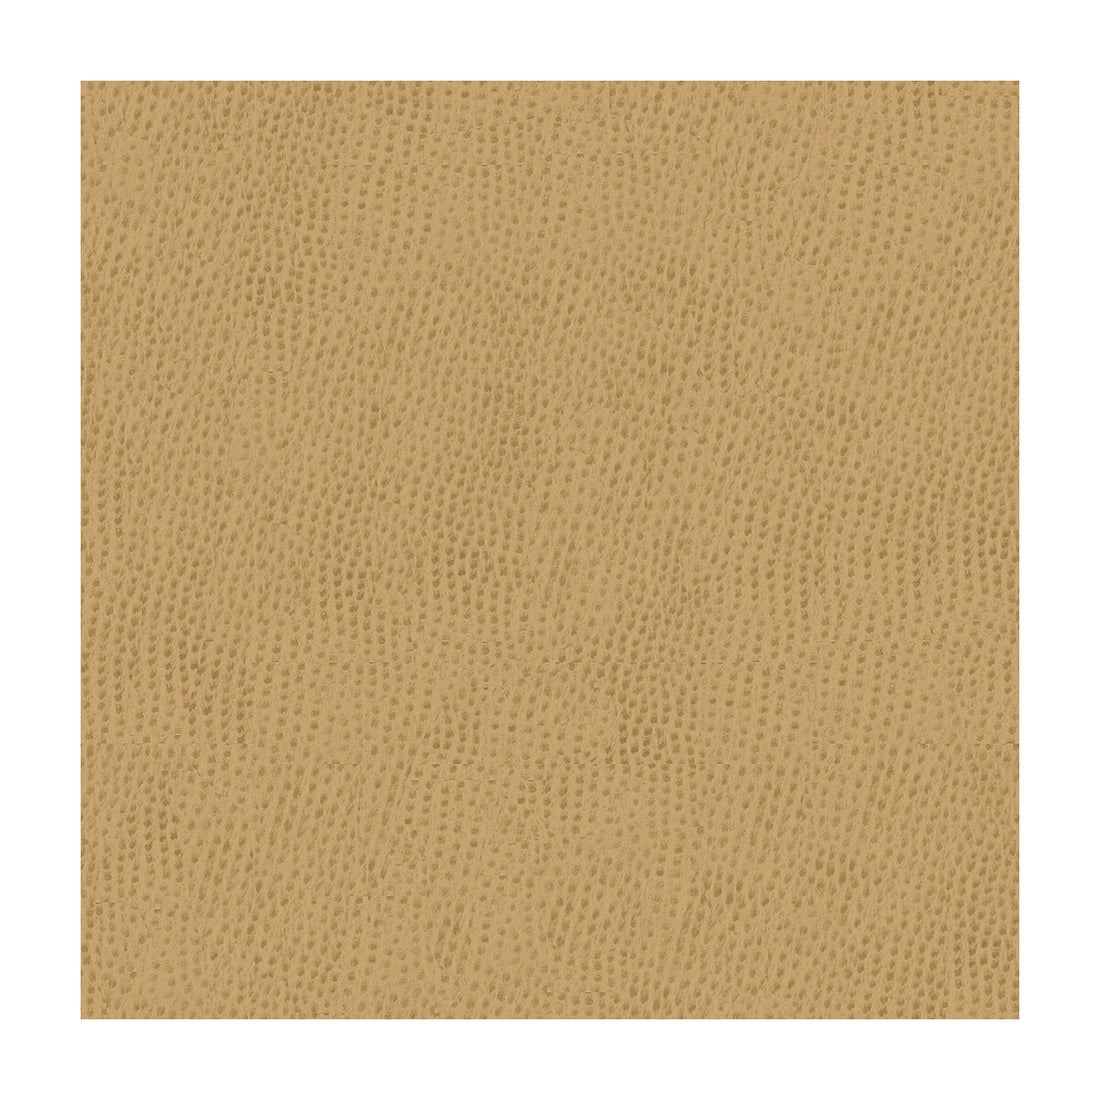 Kravet Smart fabric in ossy-1616 color - pattern OSSY.1616.0 - by Kravet Smart